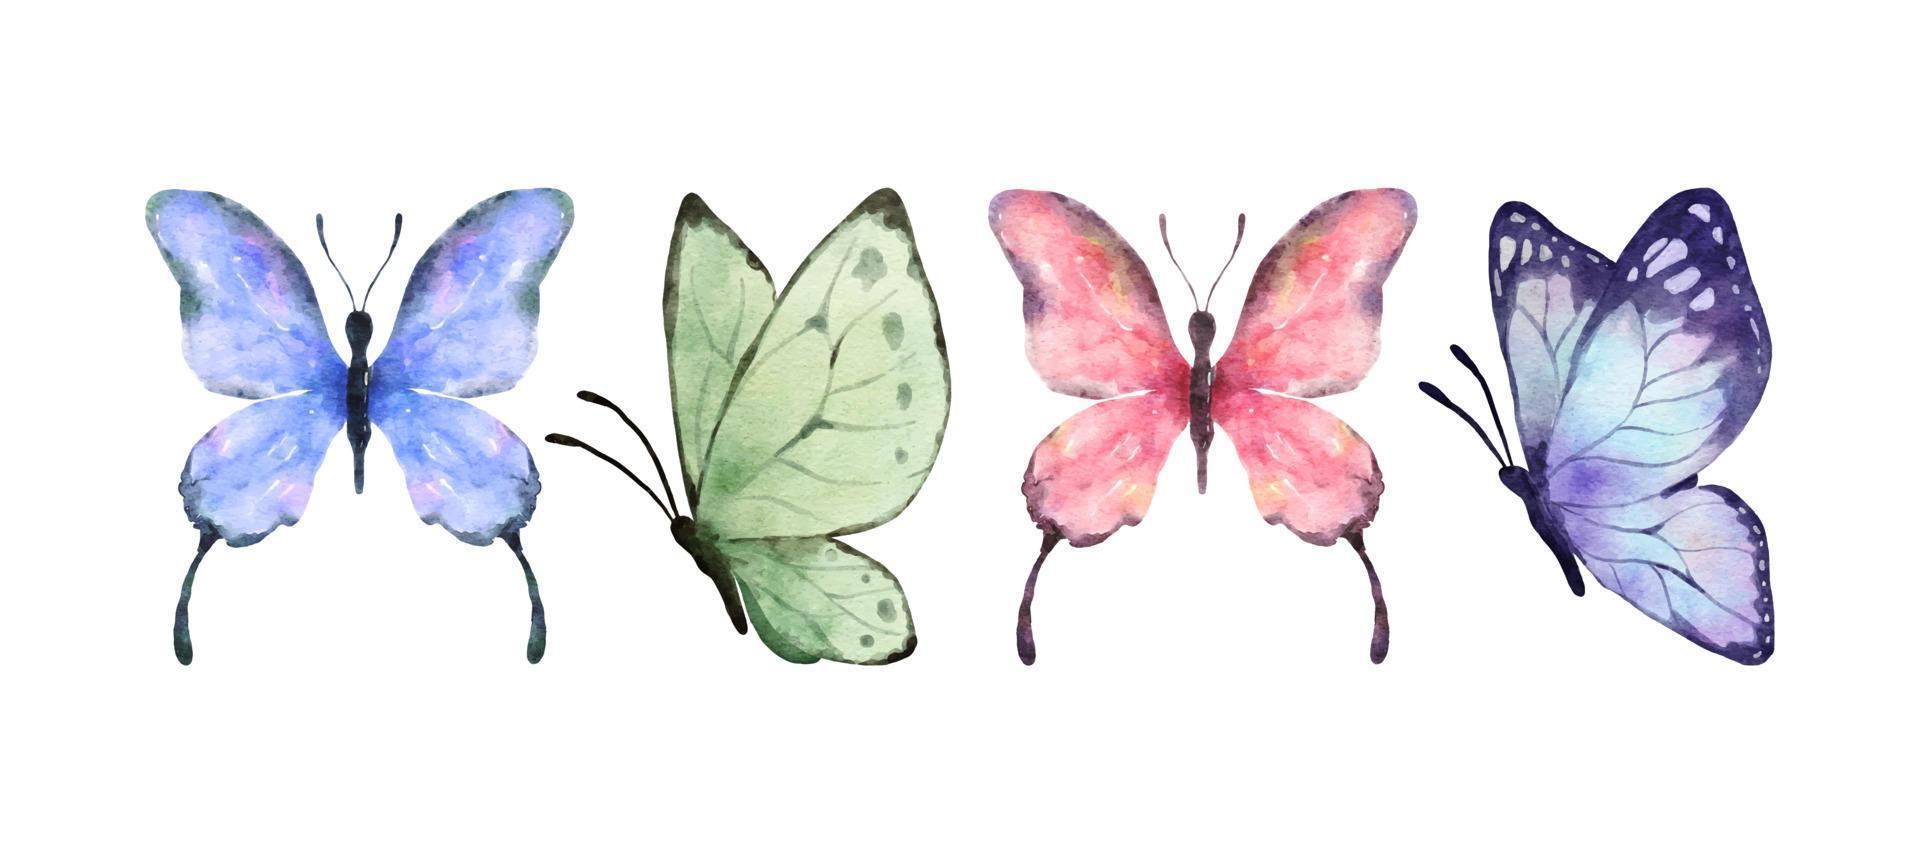 buntes Schmetterlingsaquarell lokalisiert auf weißem Hintergrund. lila, grüner, rosa und blauer Schmetterling. frühling tier vektor illustration